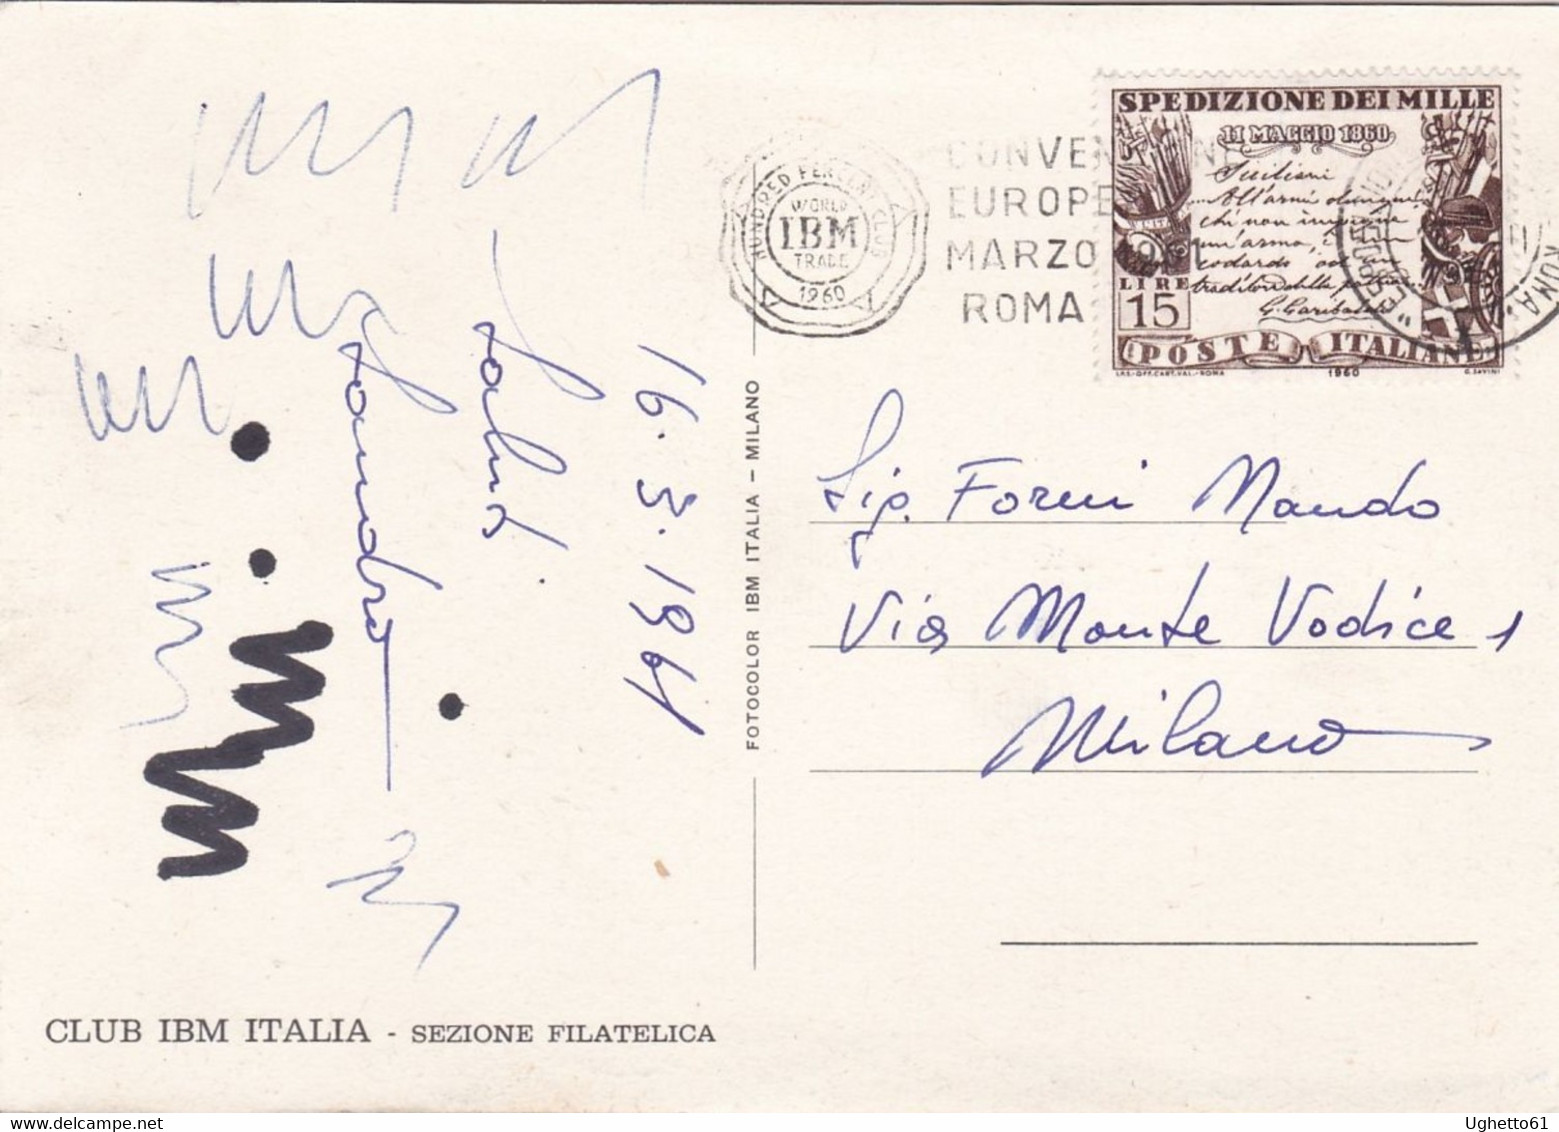 Roma - VRBS AETERNA - Club IBM Italia - Sezione Filatelica Marzo 1961 - Exhibitions